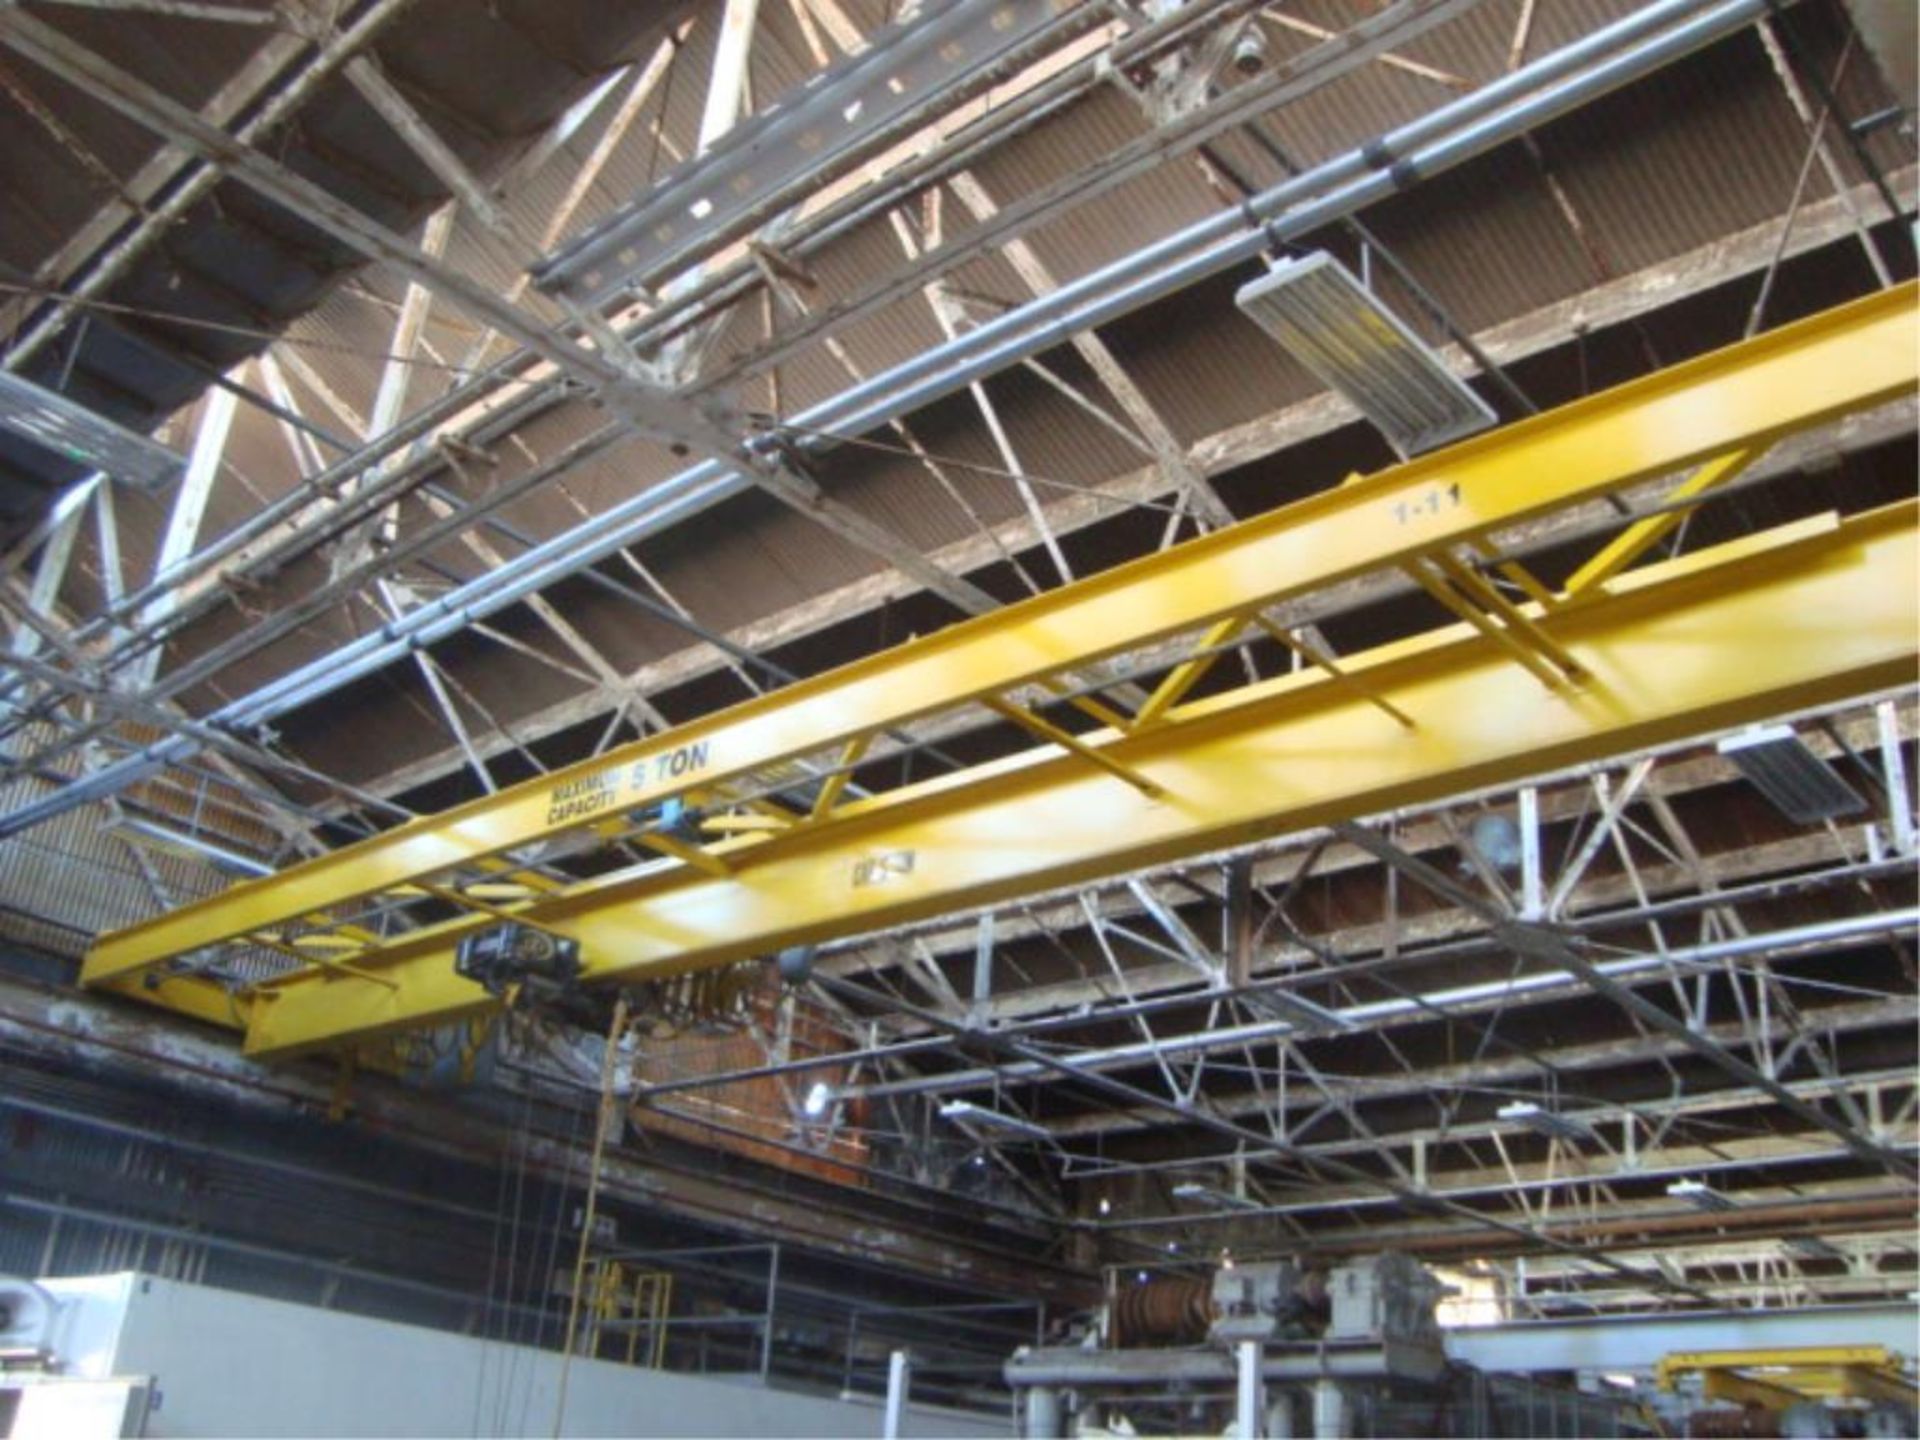 5-Ton Capacity Overhead Bridge Crane - Image 2 of 9